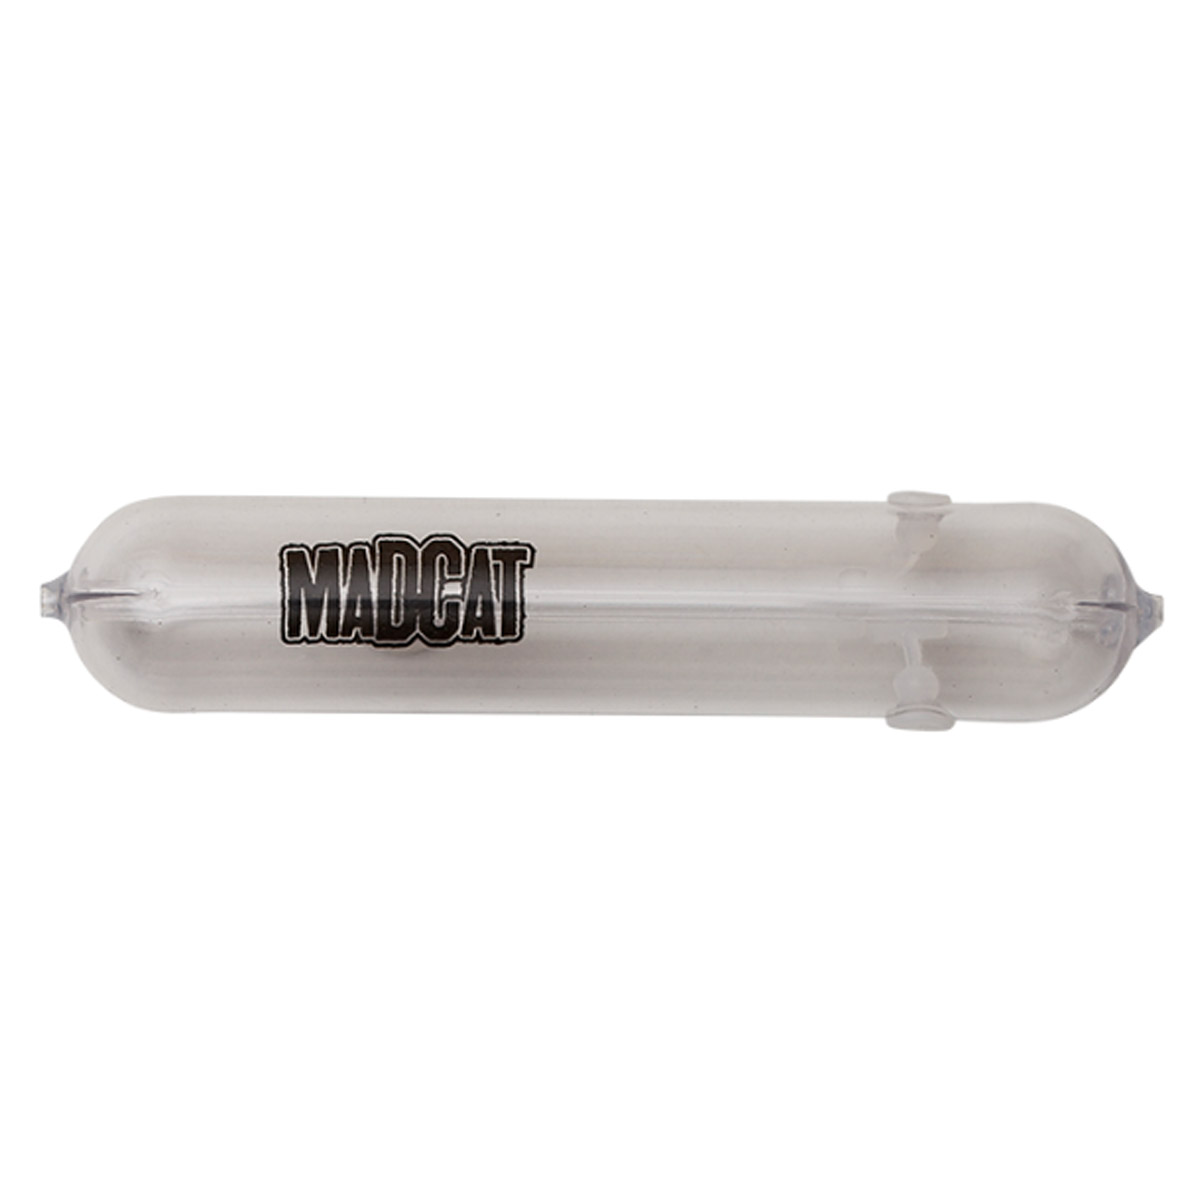 Madcat Adjusta Subfloat -  20 gram -  40 gram -  60 gram